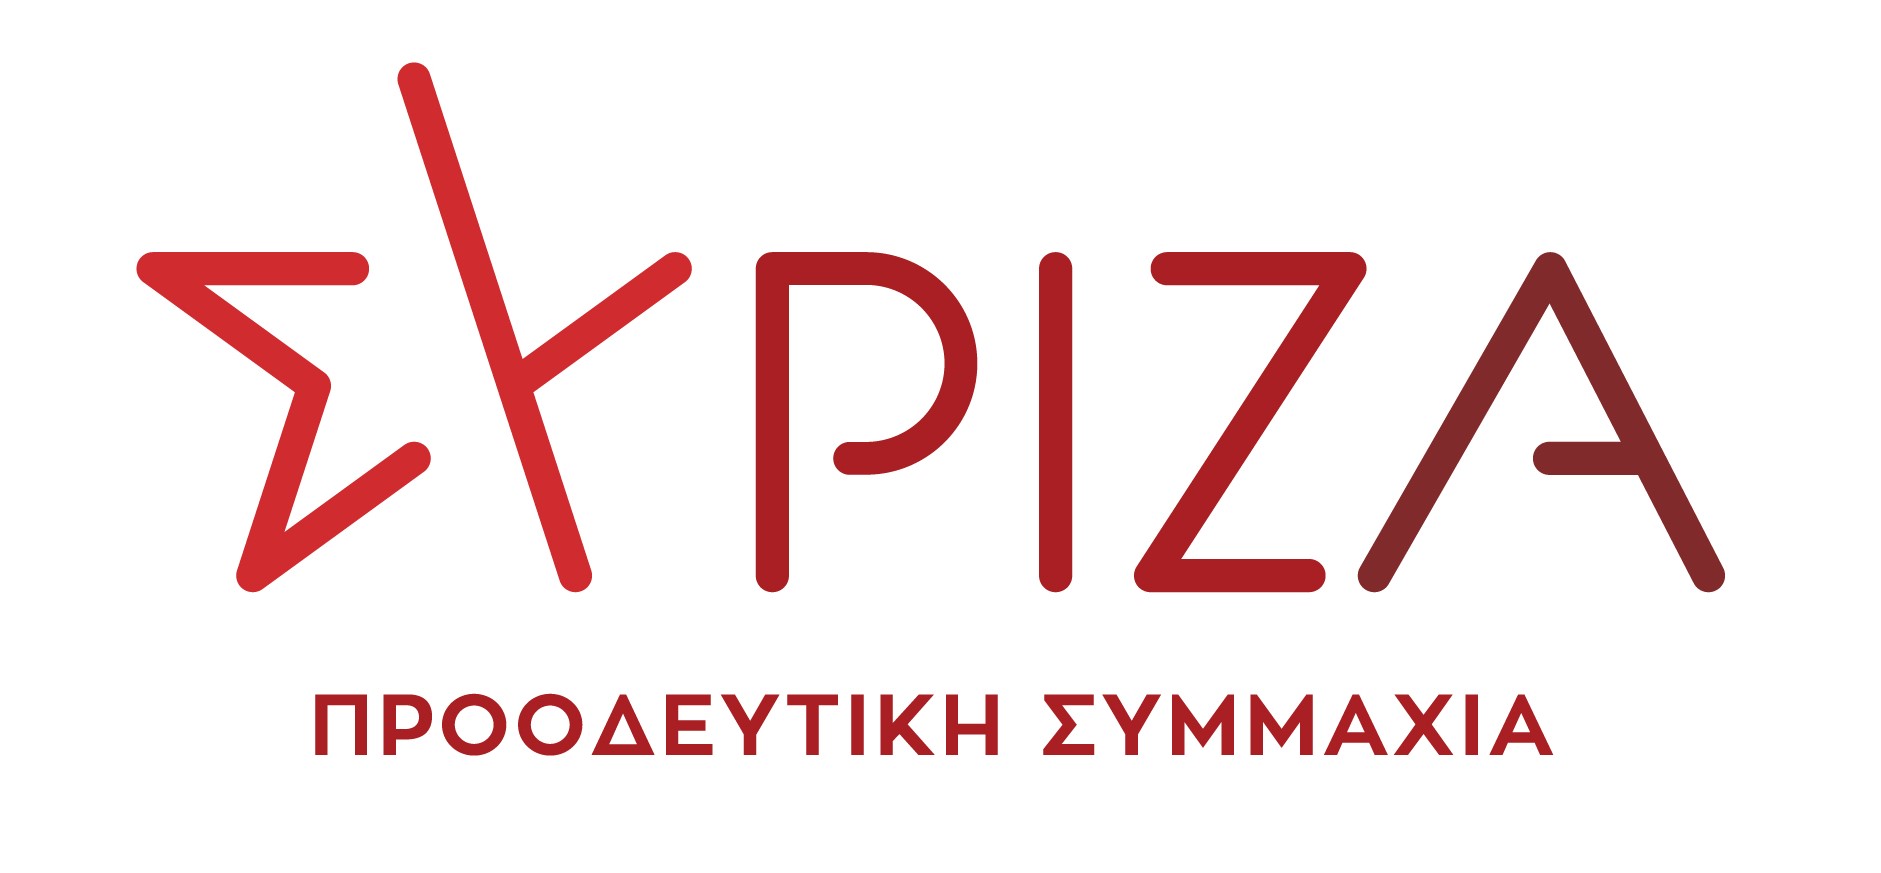 Κ. Ζαχαριάδης – Μ. Χατζηγιαννάκης: Νέα απαξίωση των ΟΤΑ από το χωροταξικό νομοσχέδιο της κυβέρνησης